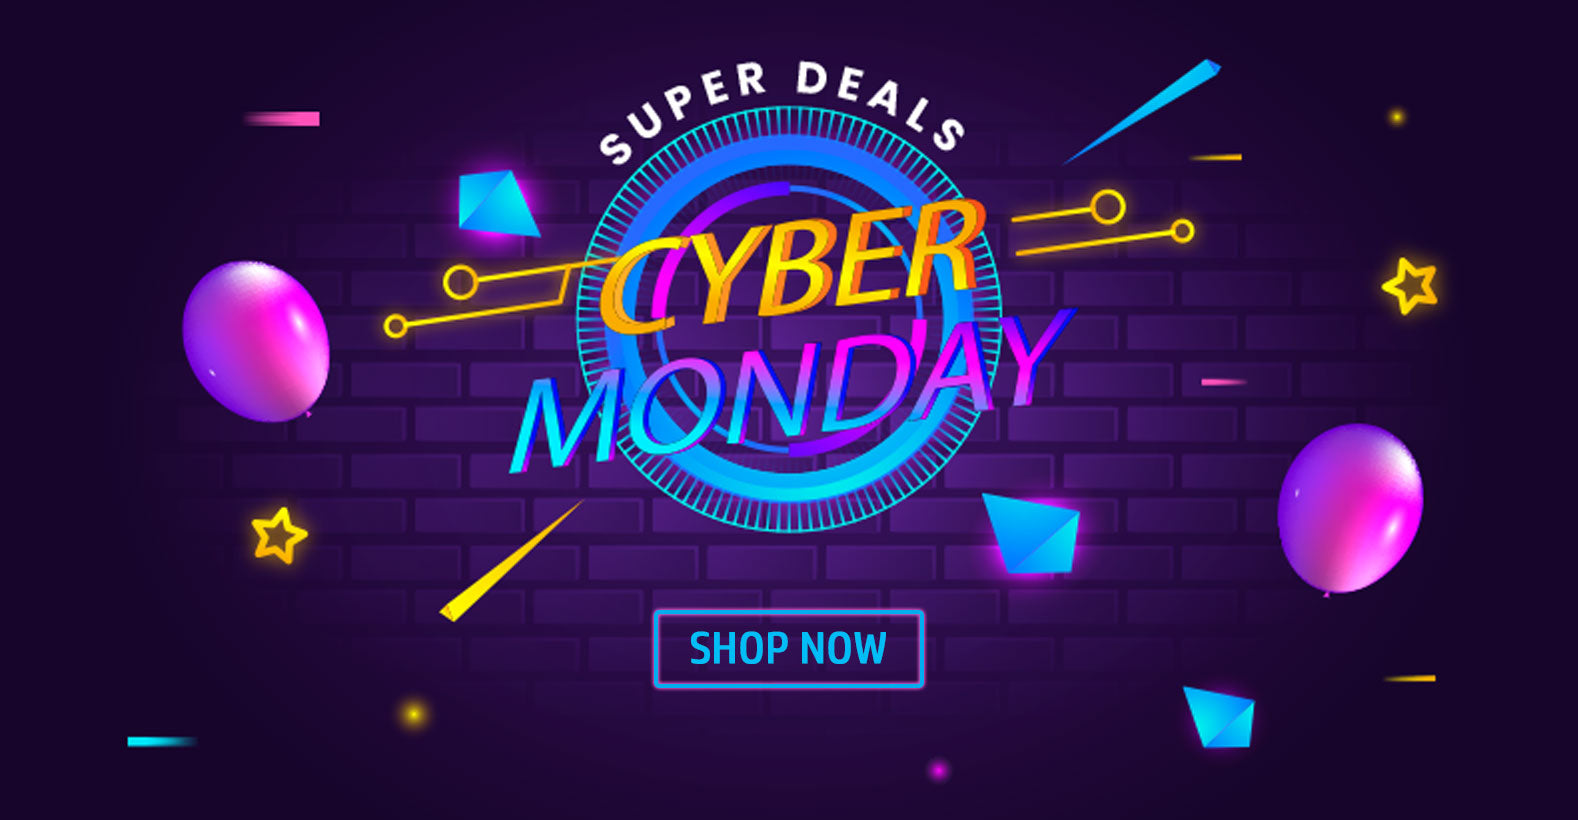 Cyber Monday Super Deals